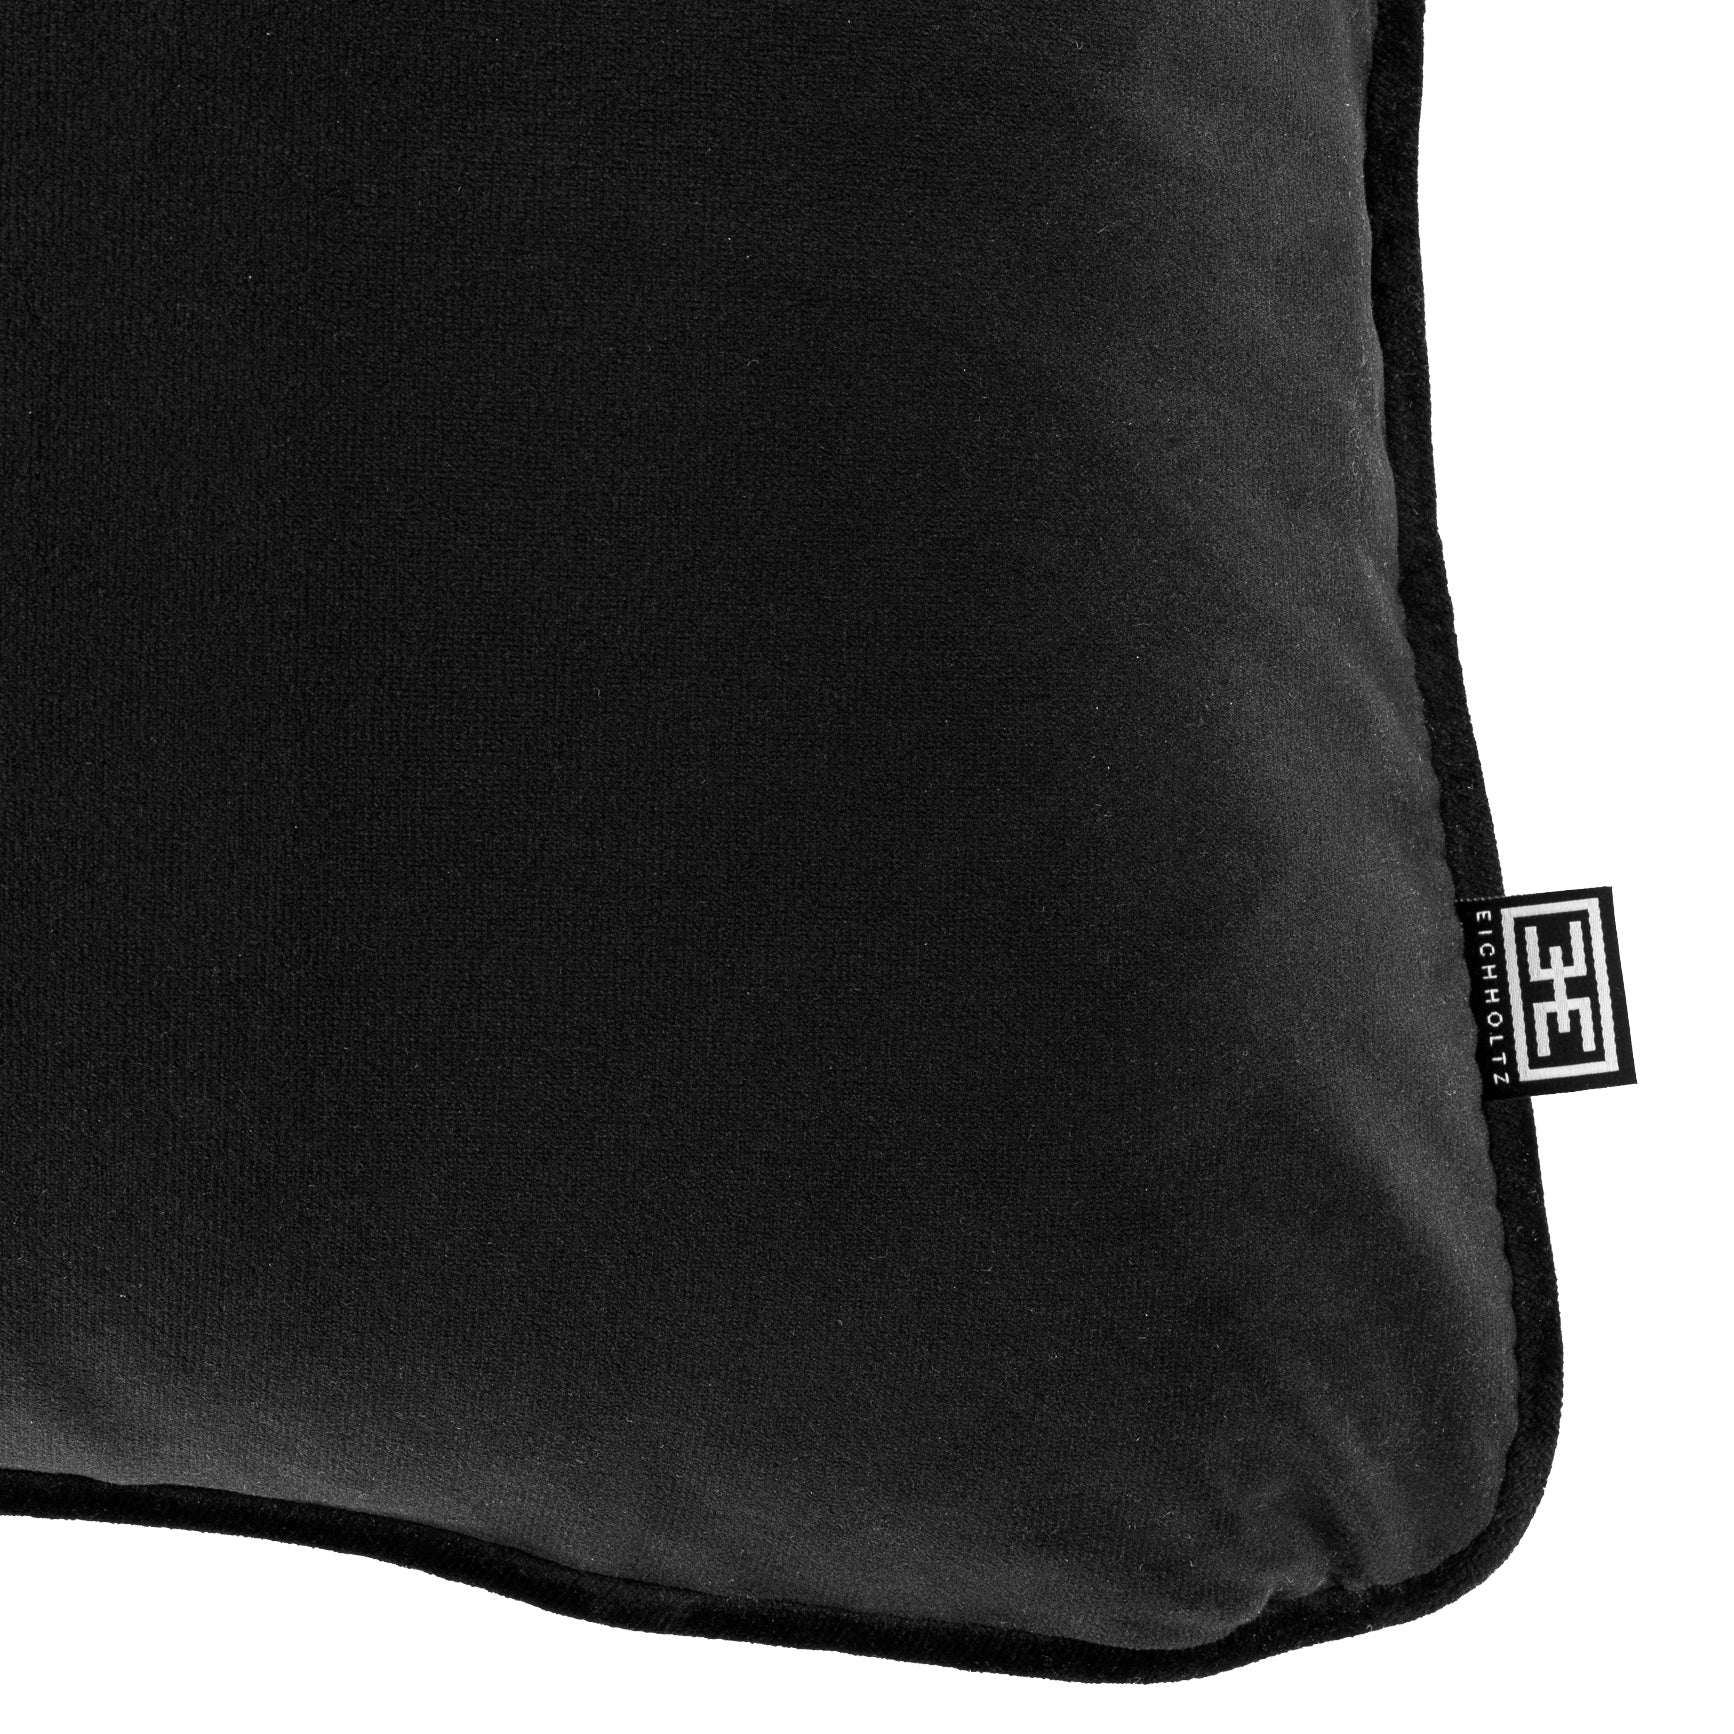 Cushion  60 x 60 cm